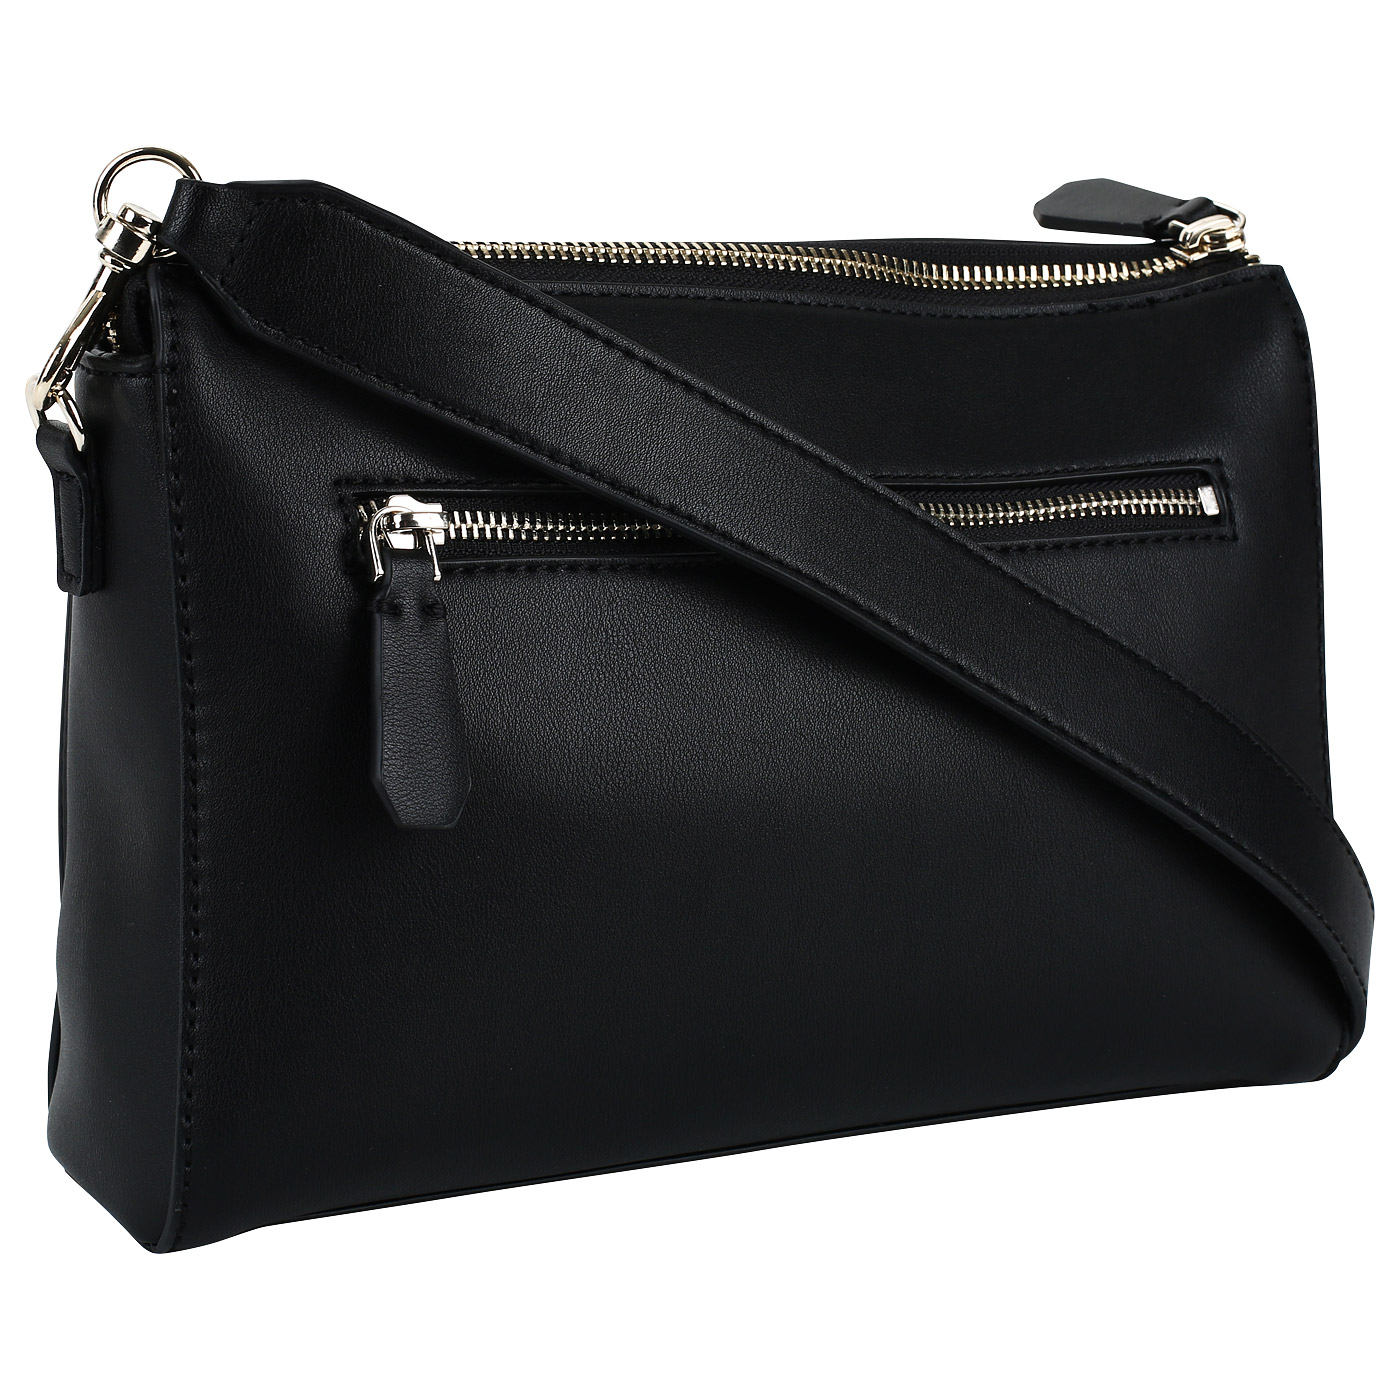 Черная женская сумочка со съемным плечевым ремешком Guess Anuka